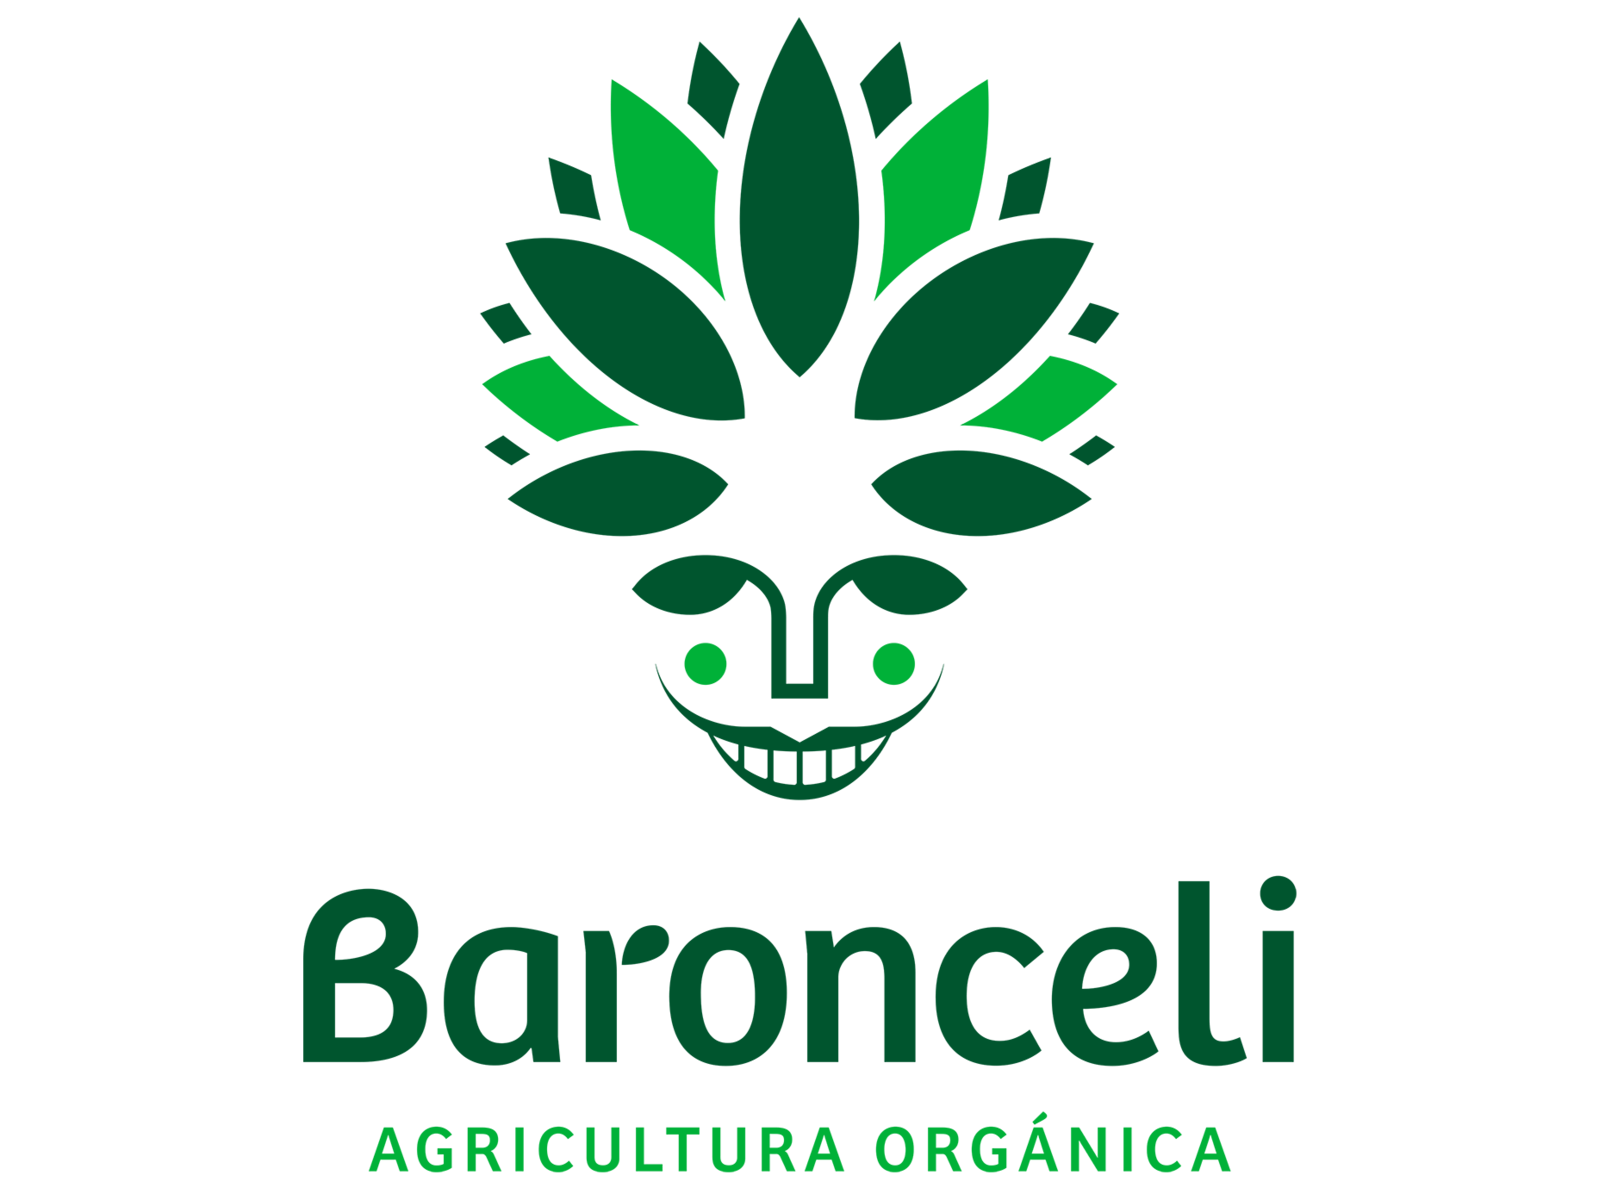 Terra de Baroncelli